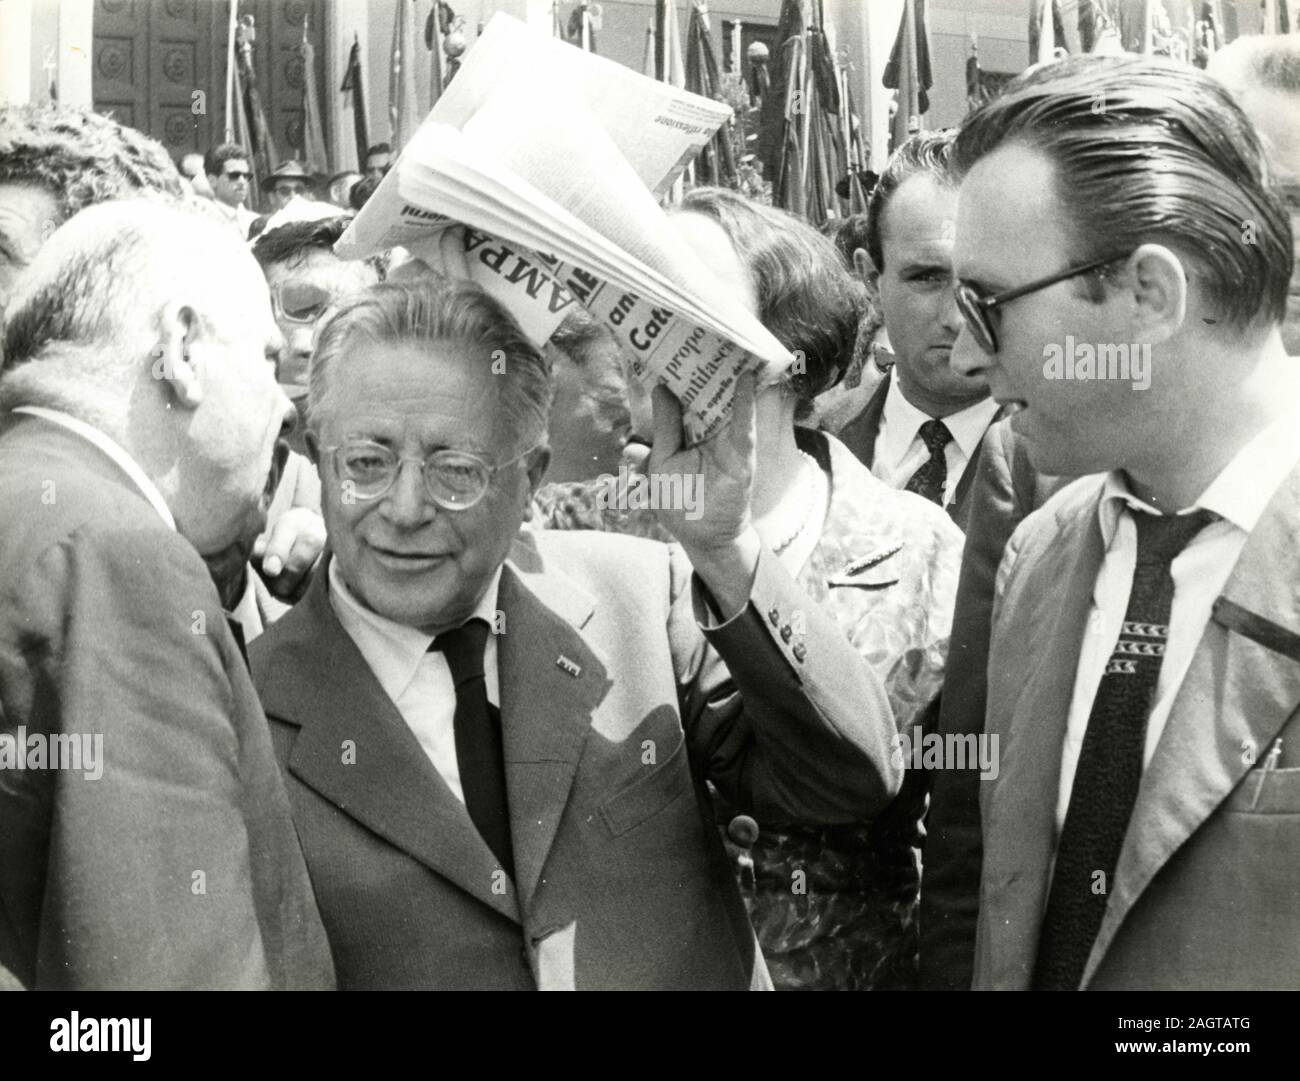 Italian politicians Palmiro Togliatti, Nilde Iotti, and fellow communist party members, Rome, Italy 1960s Stock Photo